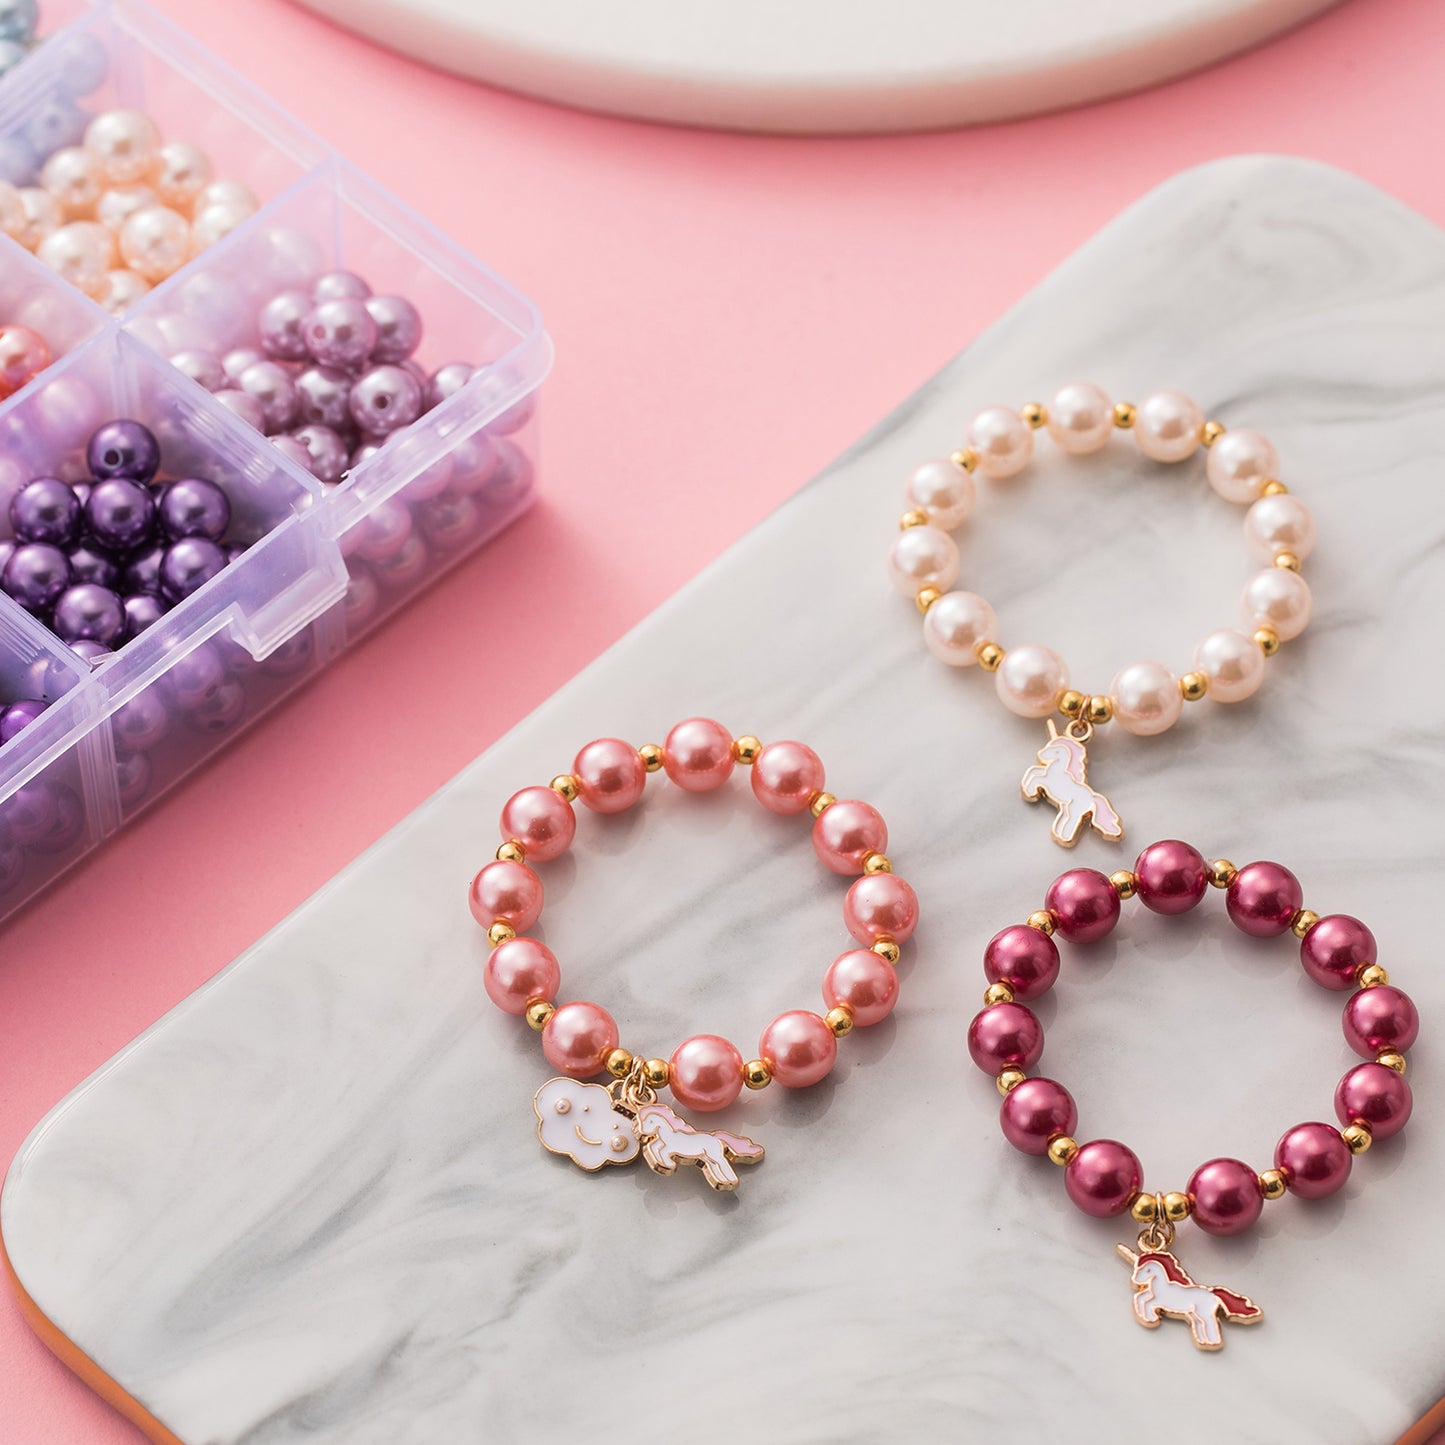 Christmas Bracelet for Girls Bracelet Making Kit with Charm Beads